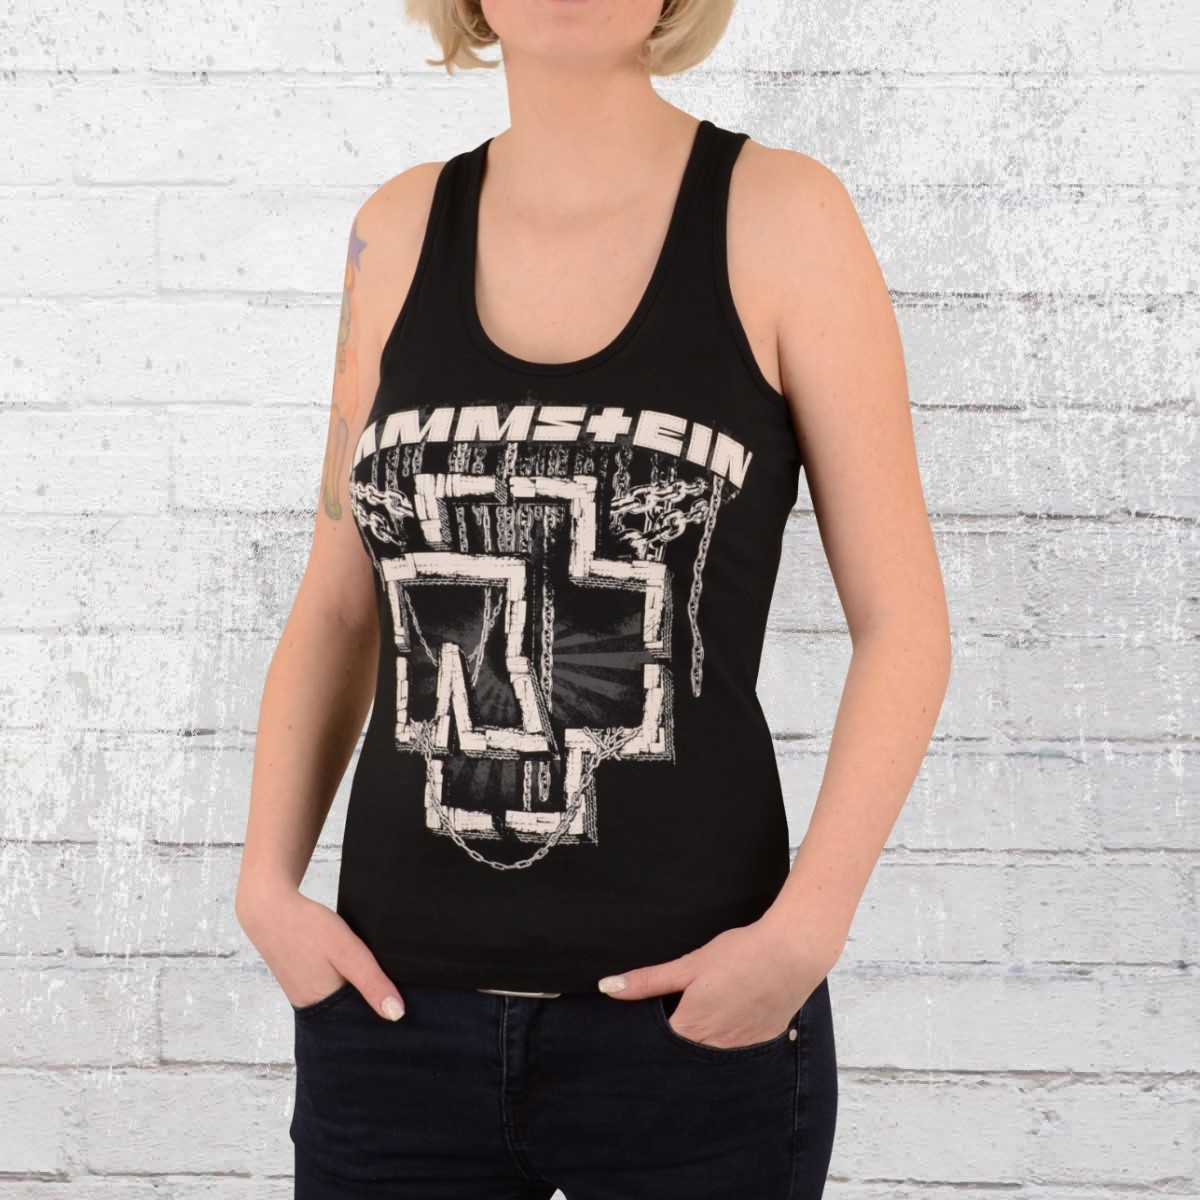 Rammstein Frauen Damen Girlie Shirt XXI Offizielles Band Merchandise Fan Shirt schwarz mit Silber metallic Front Print